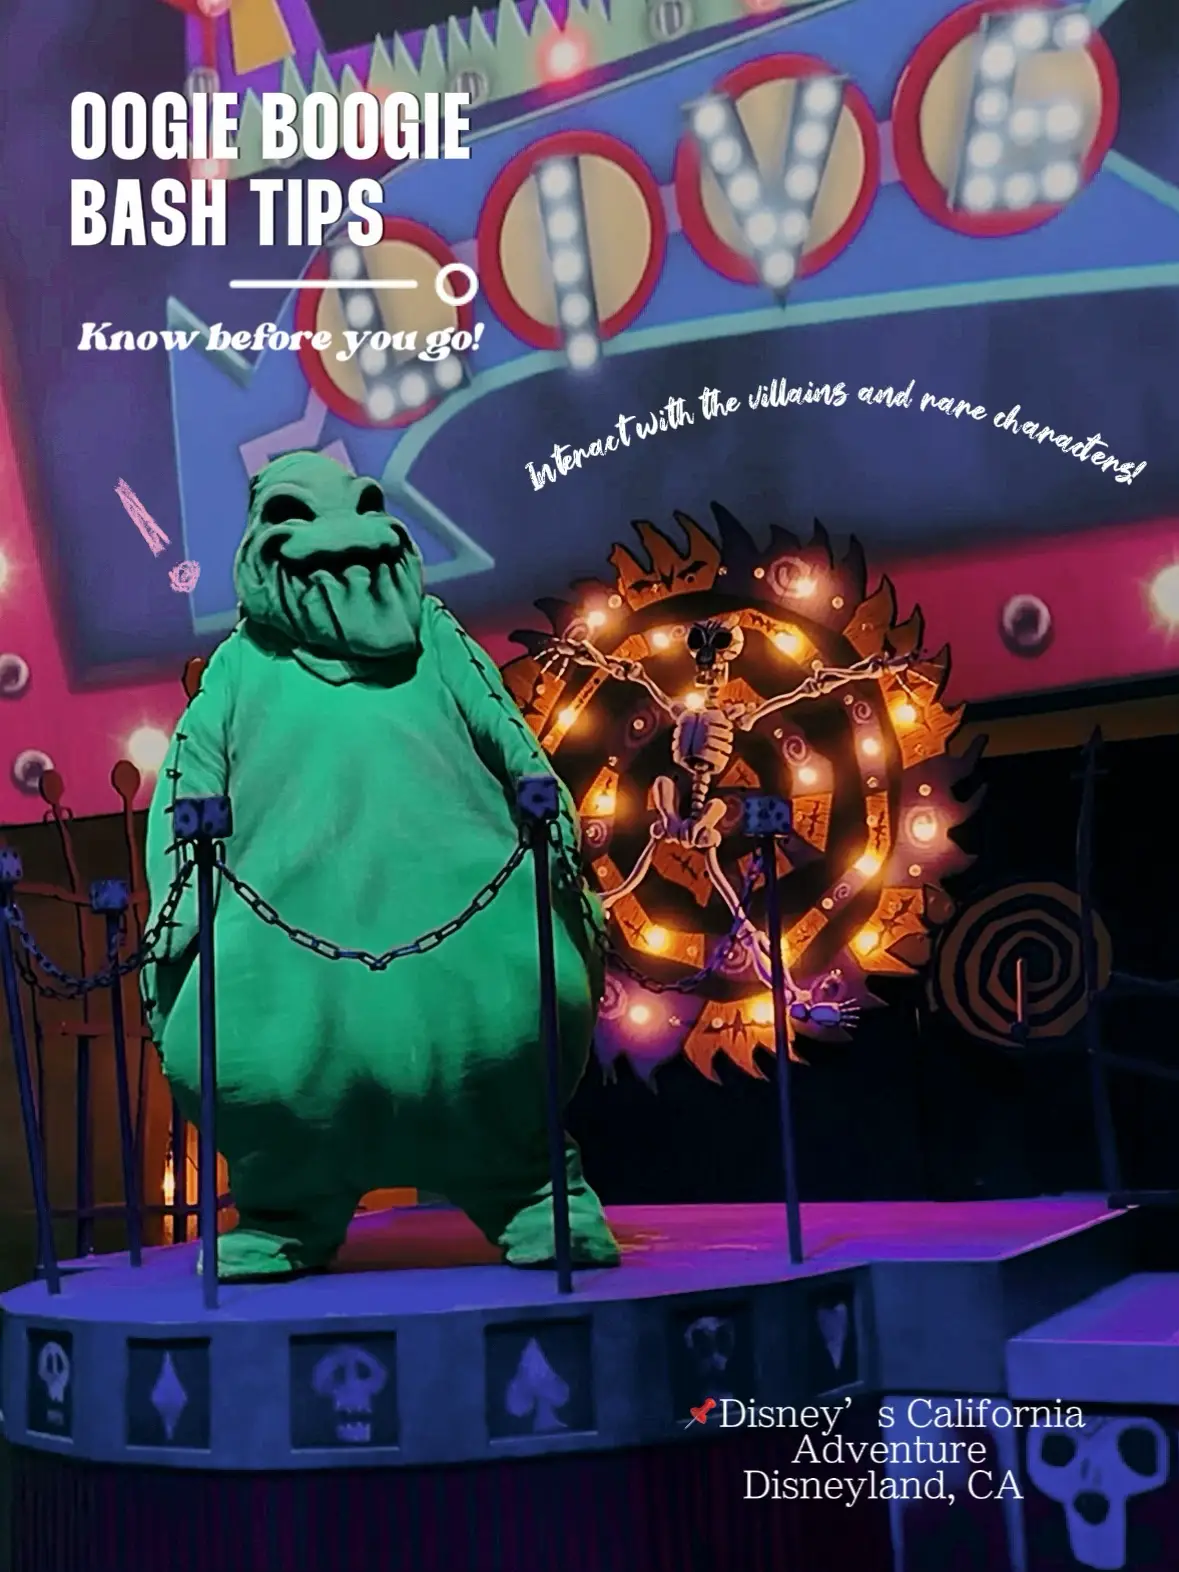 Disneyland pauses general ticket sales for Oogie Boogie Bash